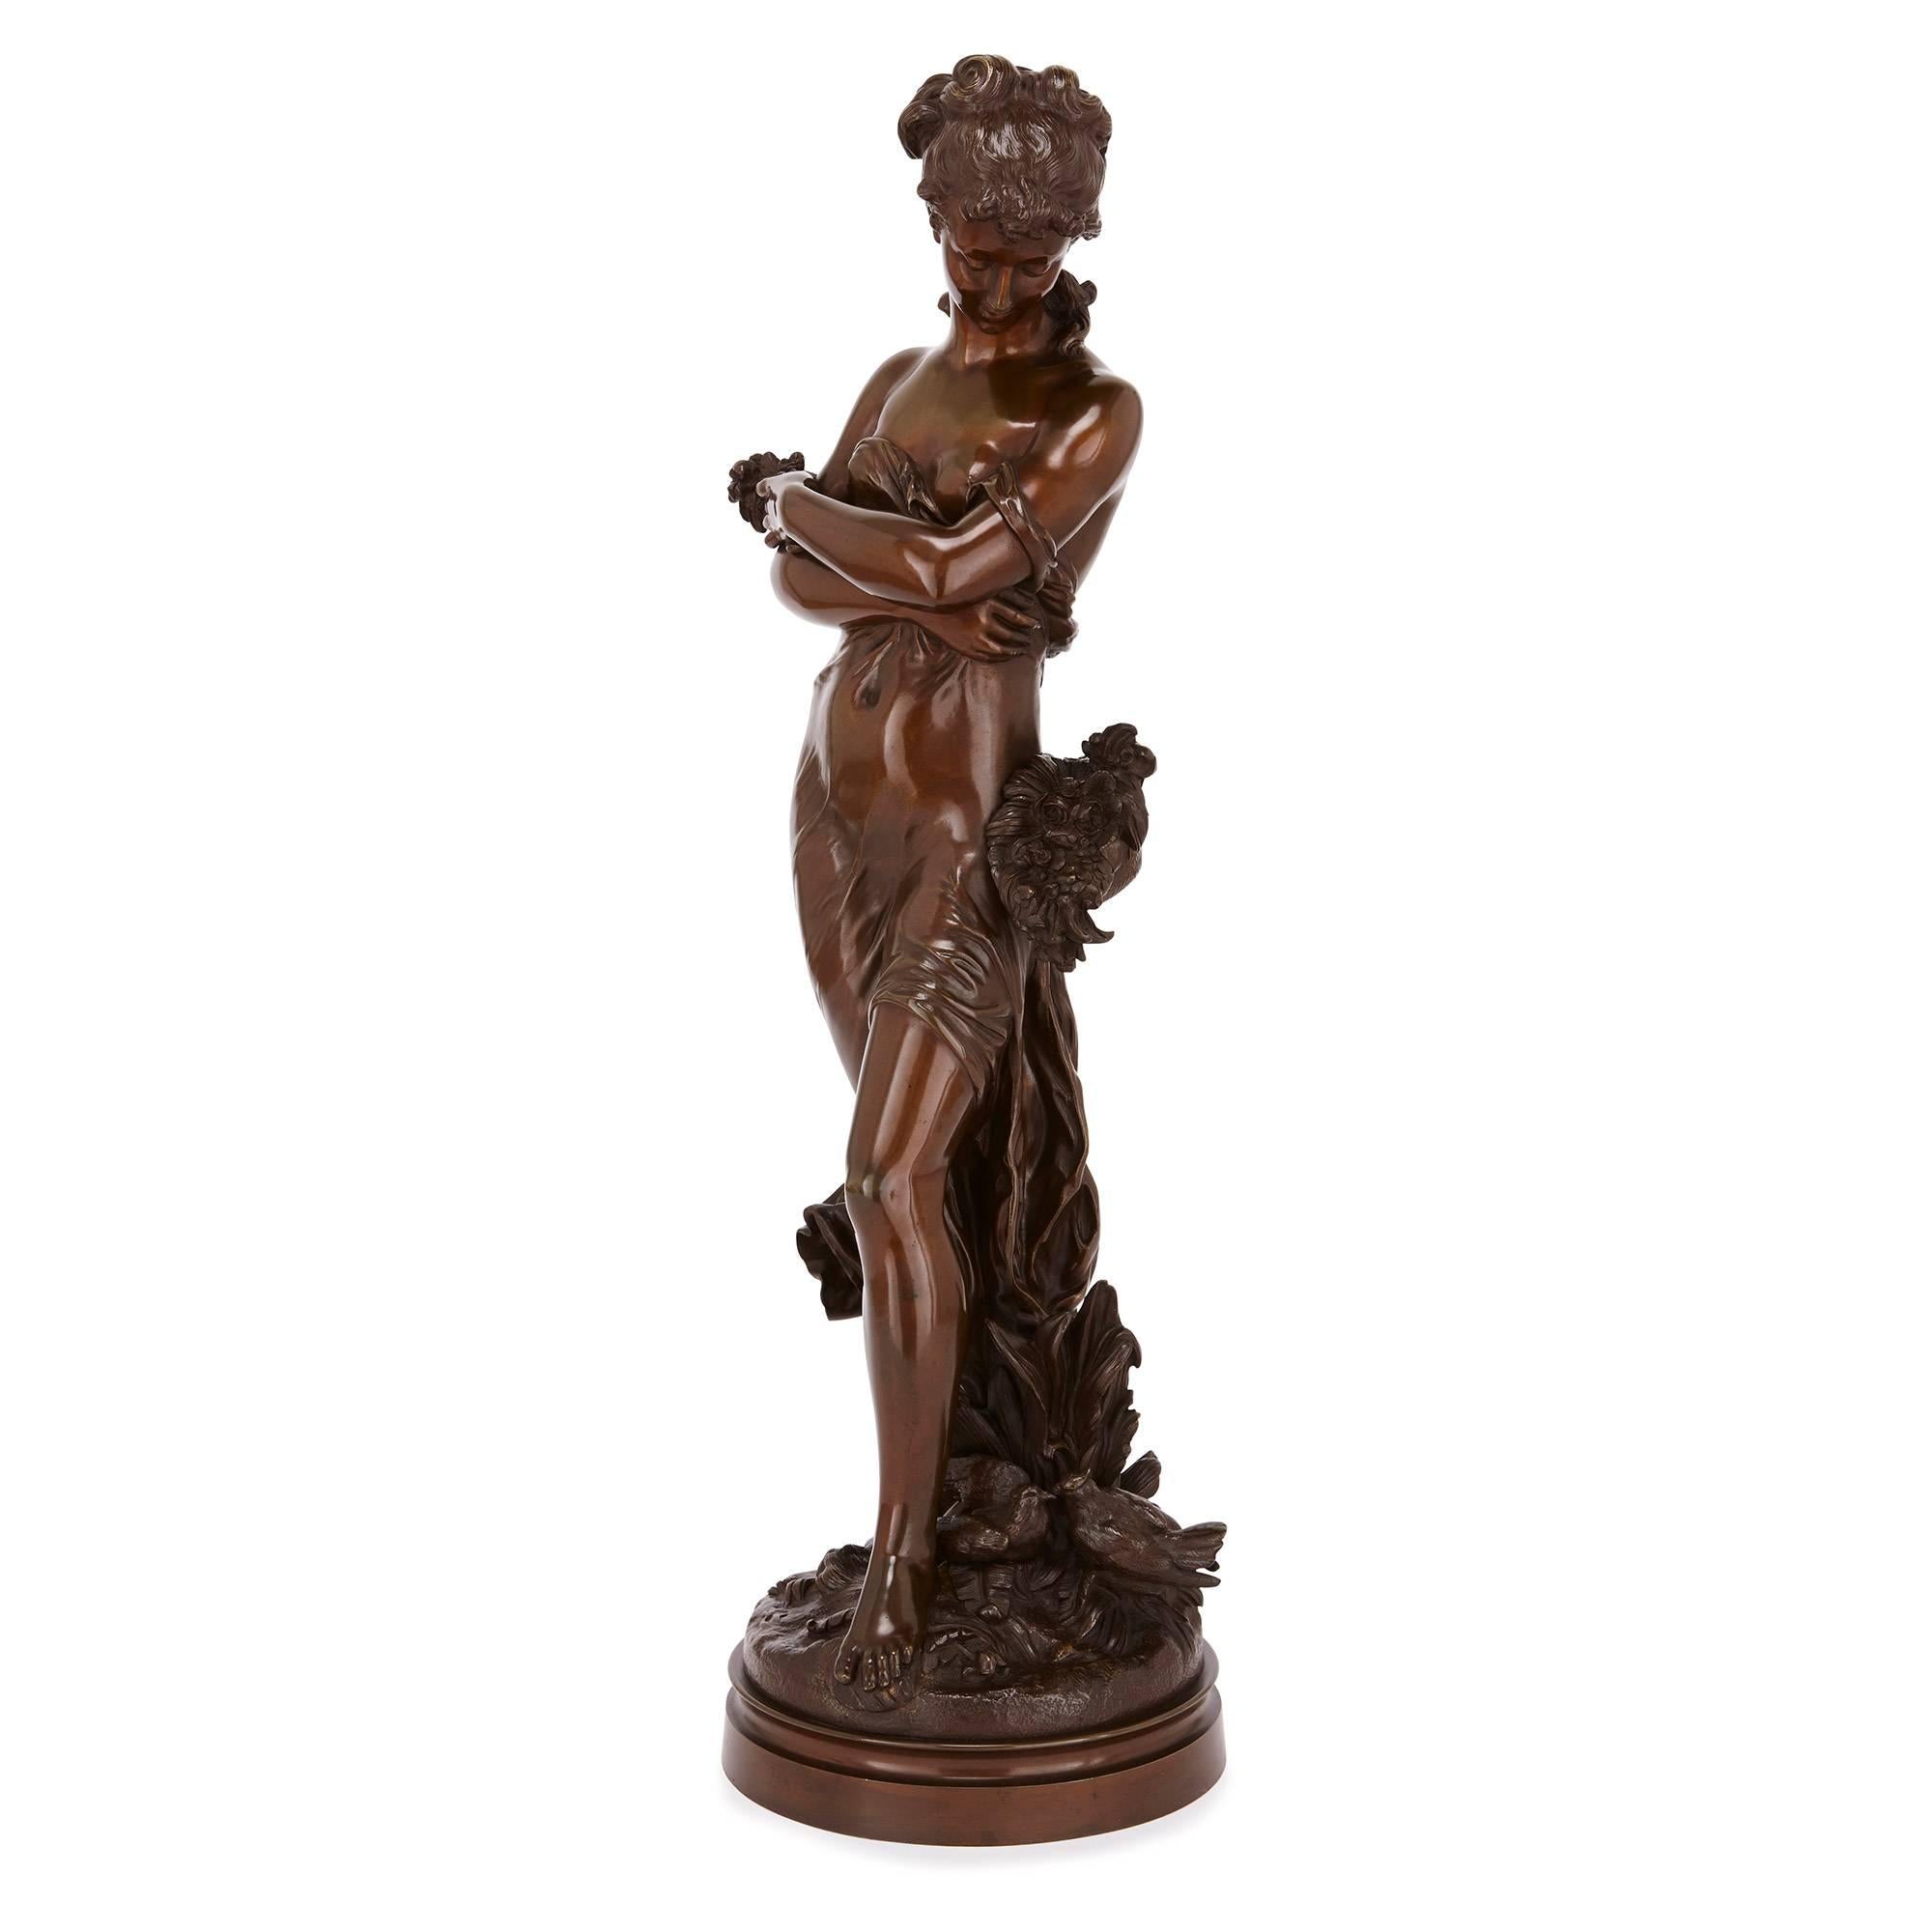 Ce bronze séduisant représente la figure en pied d'une jeune femme qui, enveloppée dans des vêtements drapés, regarde vers le bas en direction d'un panier de fleurs accroché à sa taille. La base circulaire sur laquelle elle se tient est moulée de